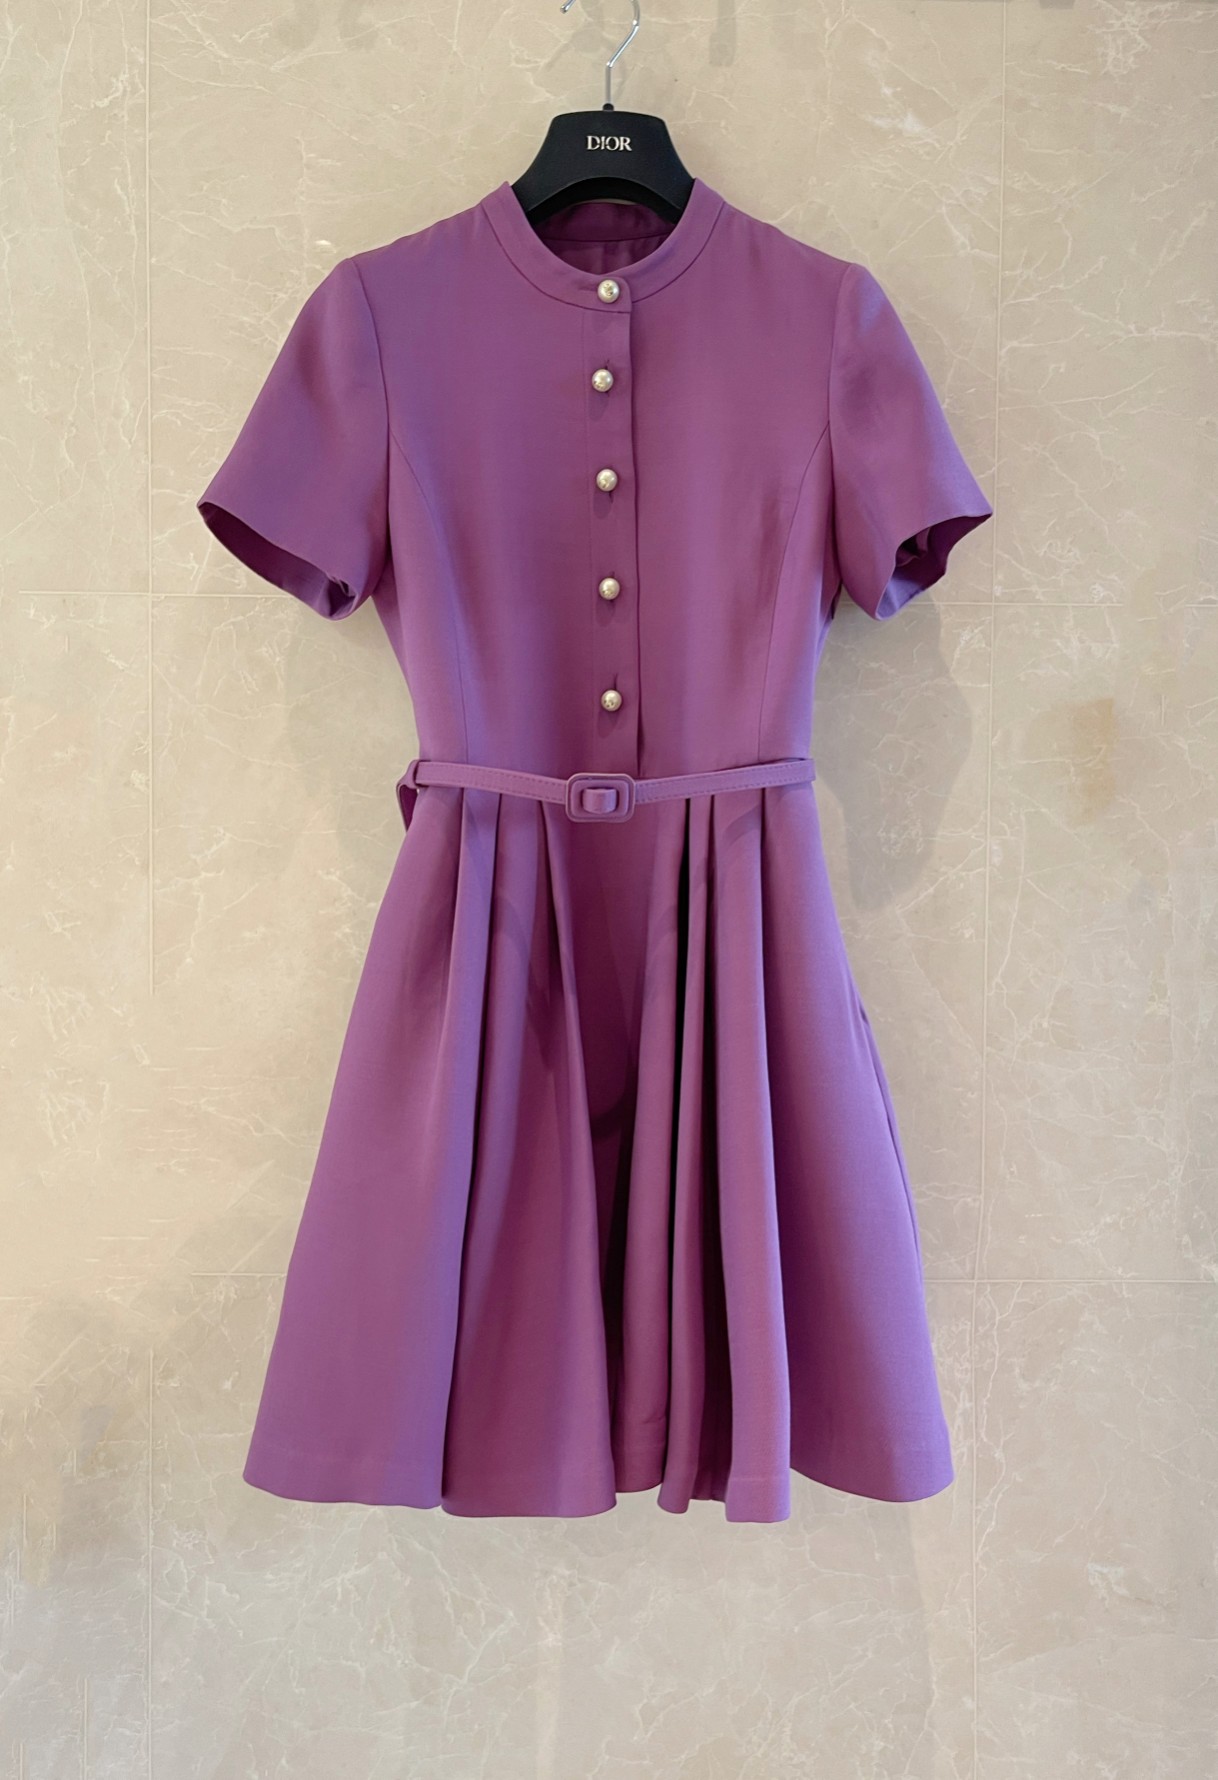 D家新品\n紫色丝毛短袖连衣裙\n高贵紫 立领设计上身显瘦气质\n36-38-40-42